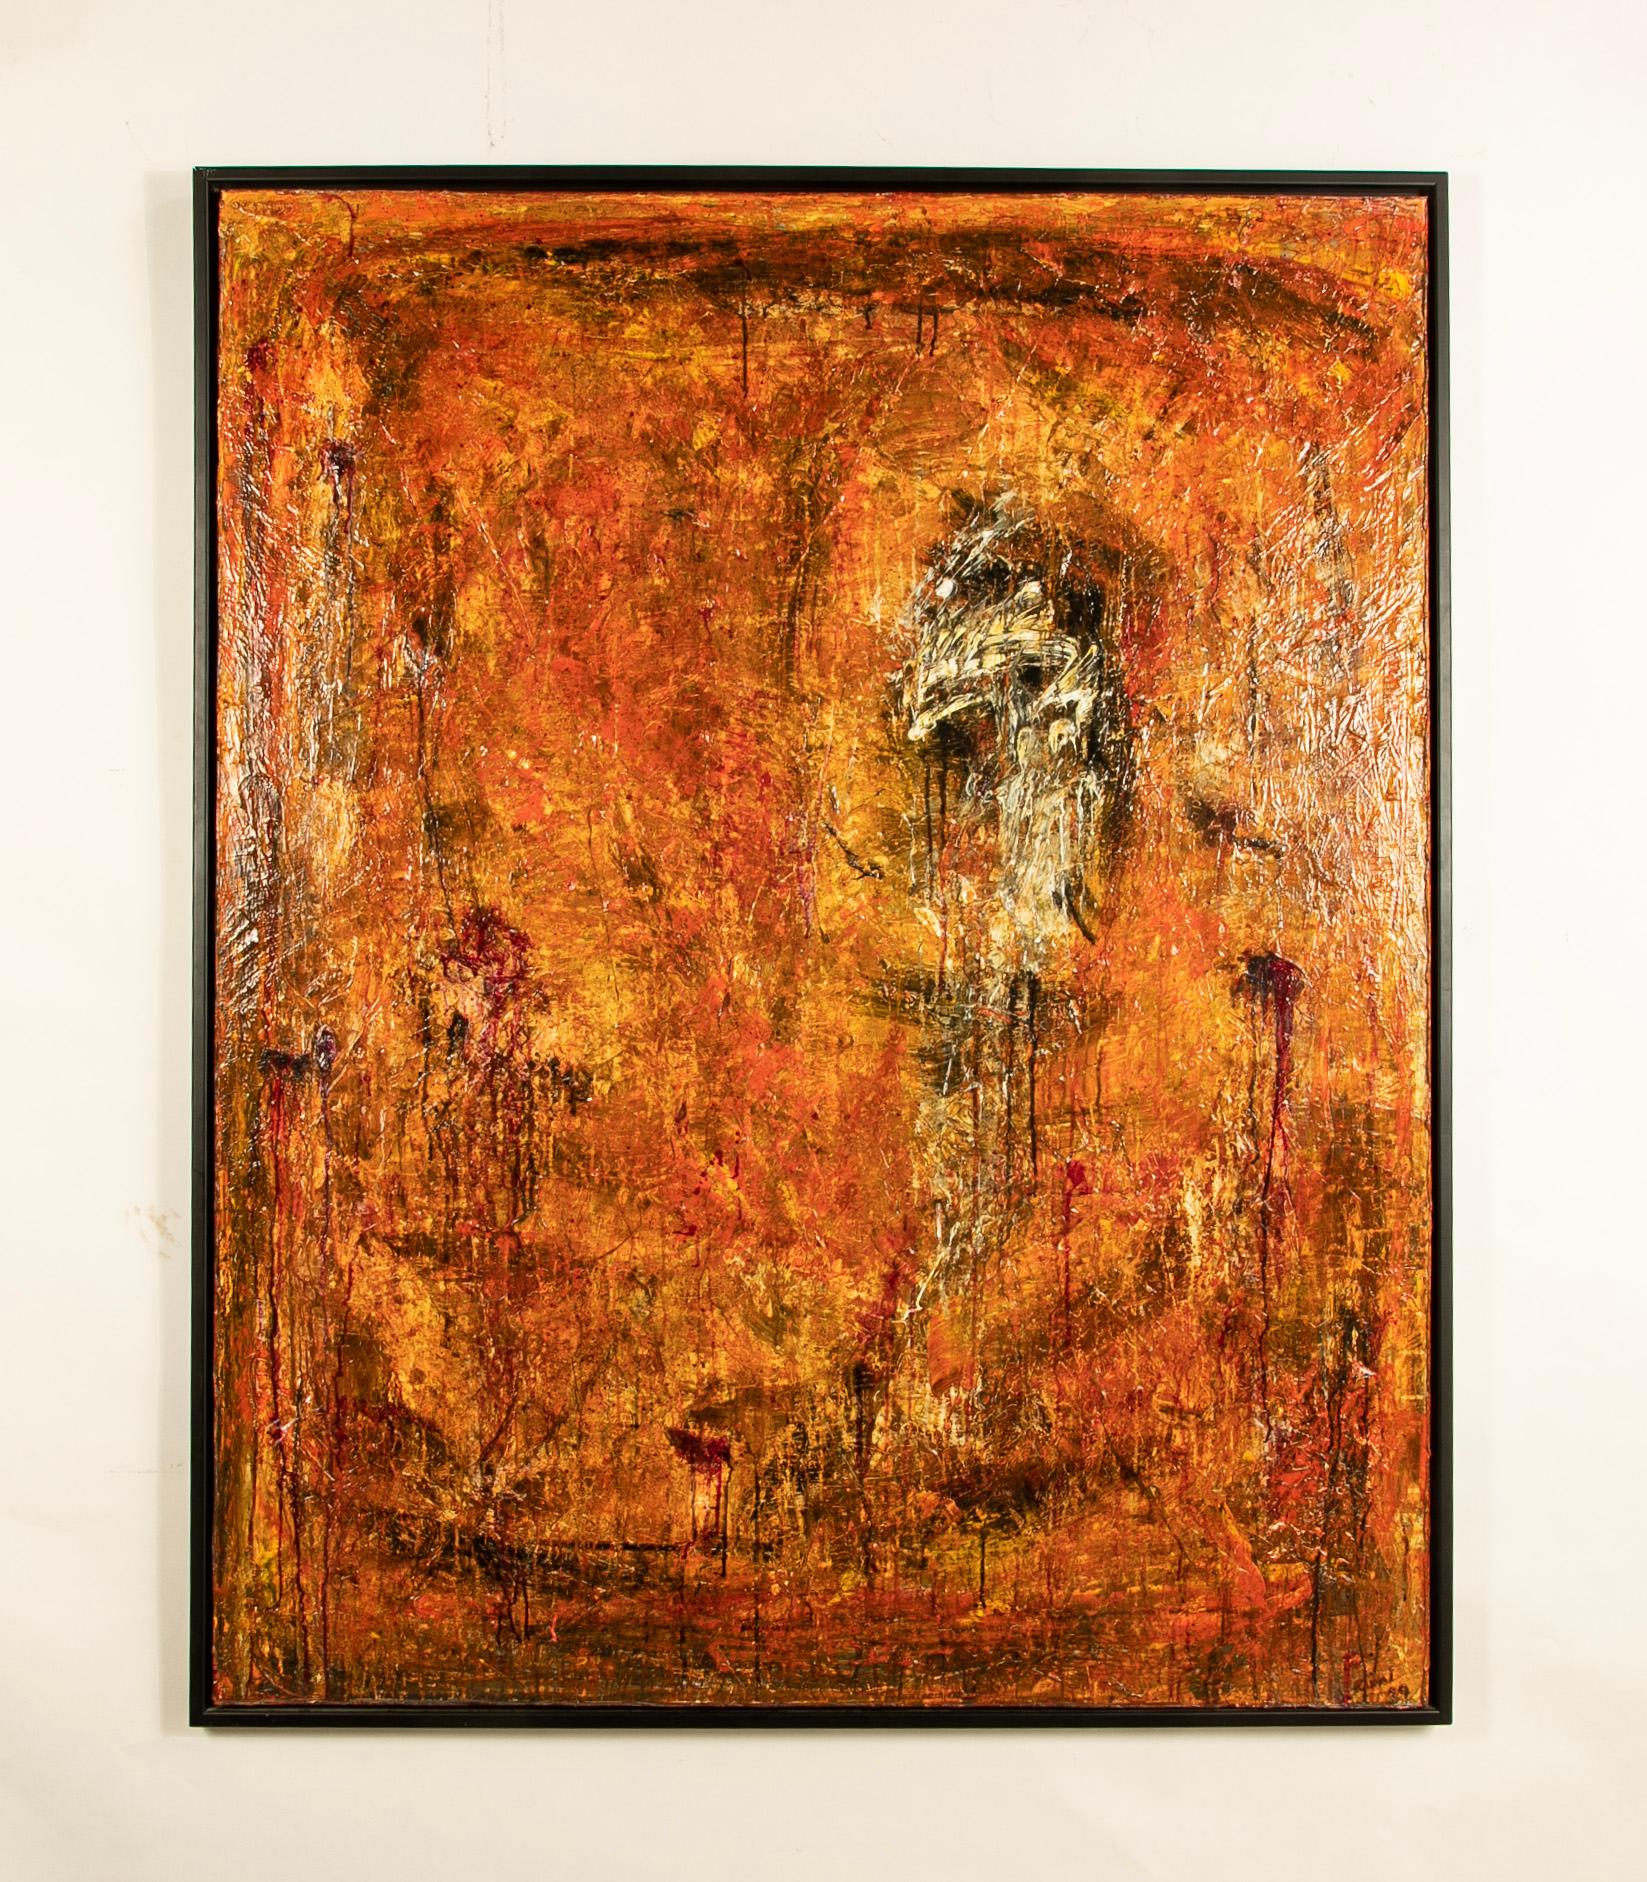 Der zeitgenössische börsennotierte Künstler Ricardo Rumi (geb. 1960) ist bekannt für seine dicke Impasto-Technik und seine kräftigen Pinselstriche in einem post-abstrakten expressionistischen Stil. 

Viele seiner Werke wurden in letzter Zeit